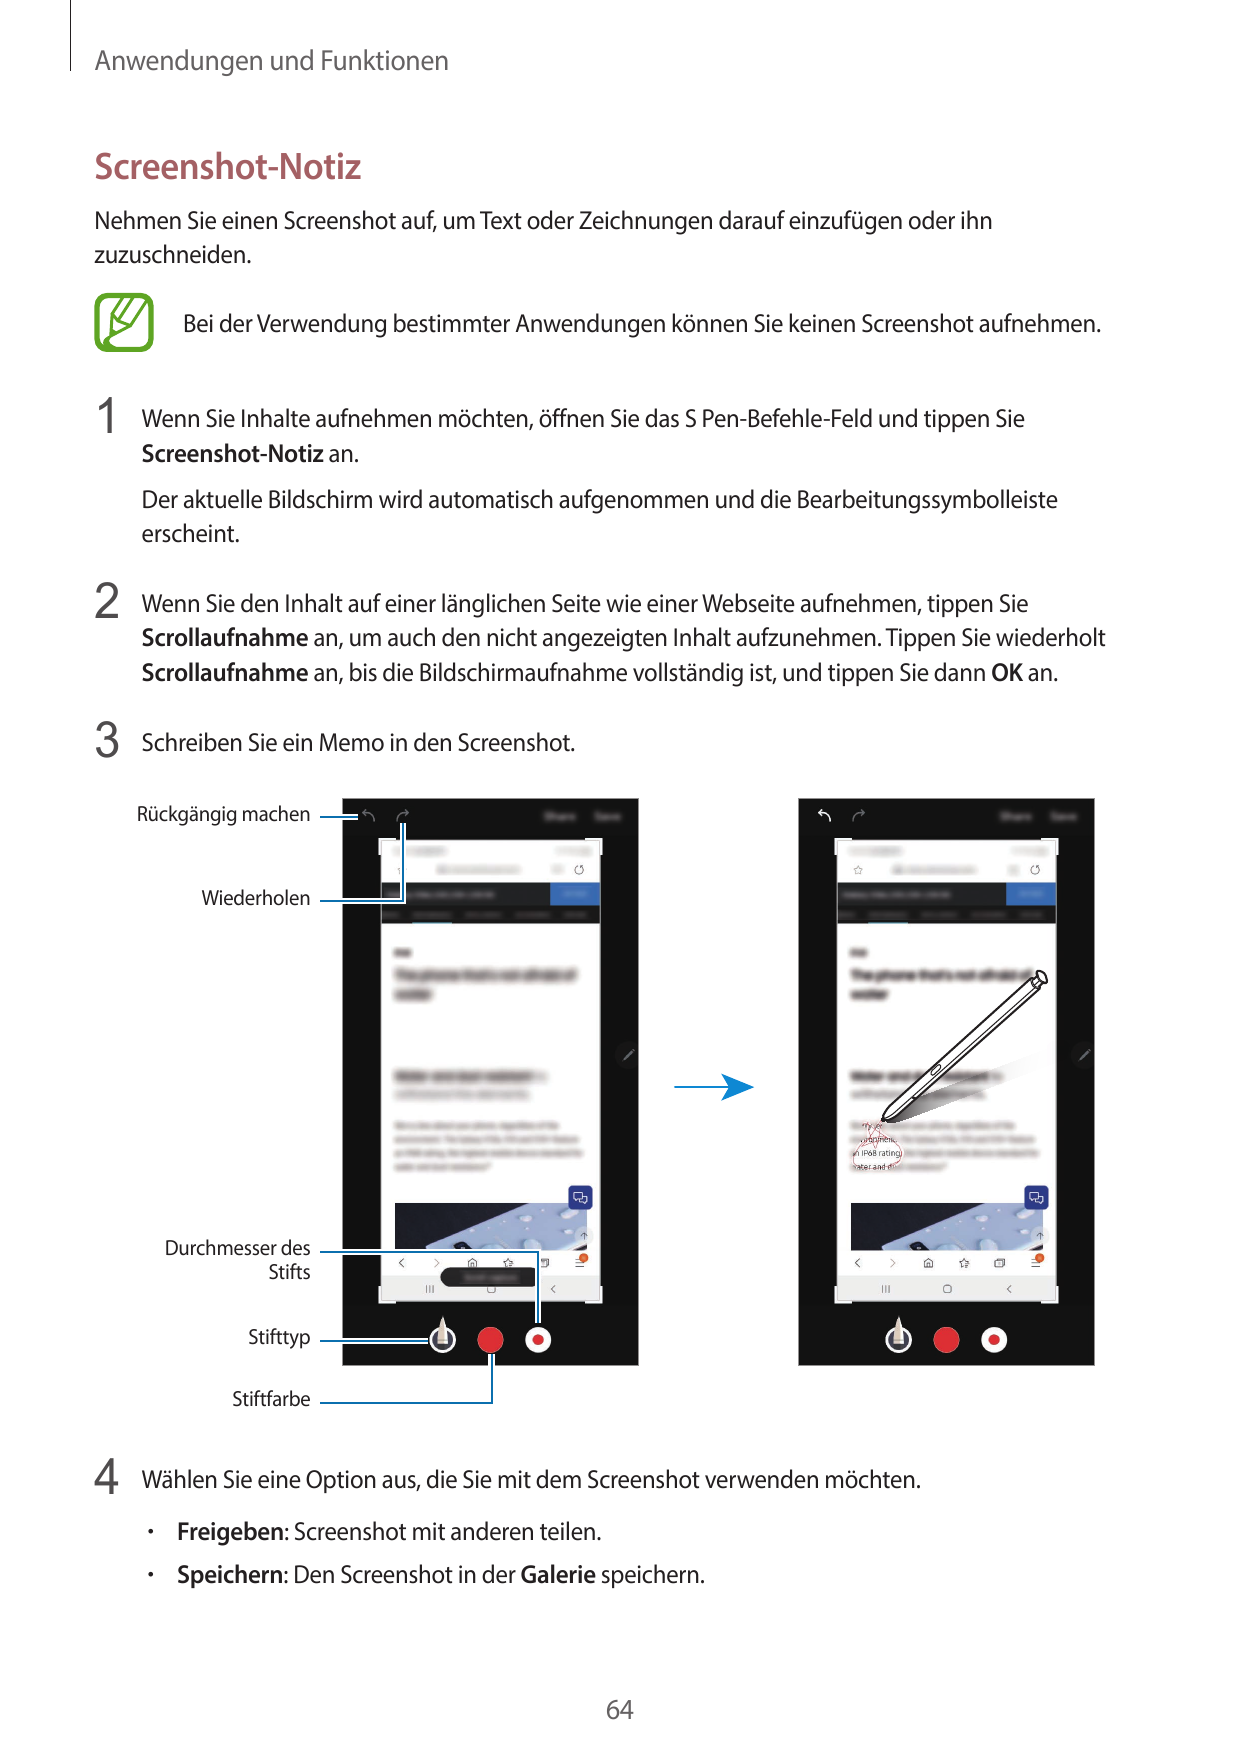 Anwendungen und FunktionenScreenshot-NotizNehmen Sie einen Screenshot auf, um Text oder Zeichnungen darauf einzufügen oder ihnzu